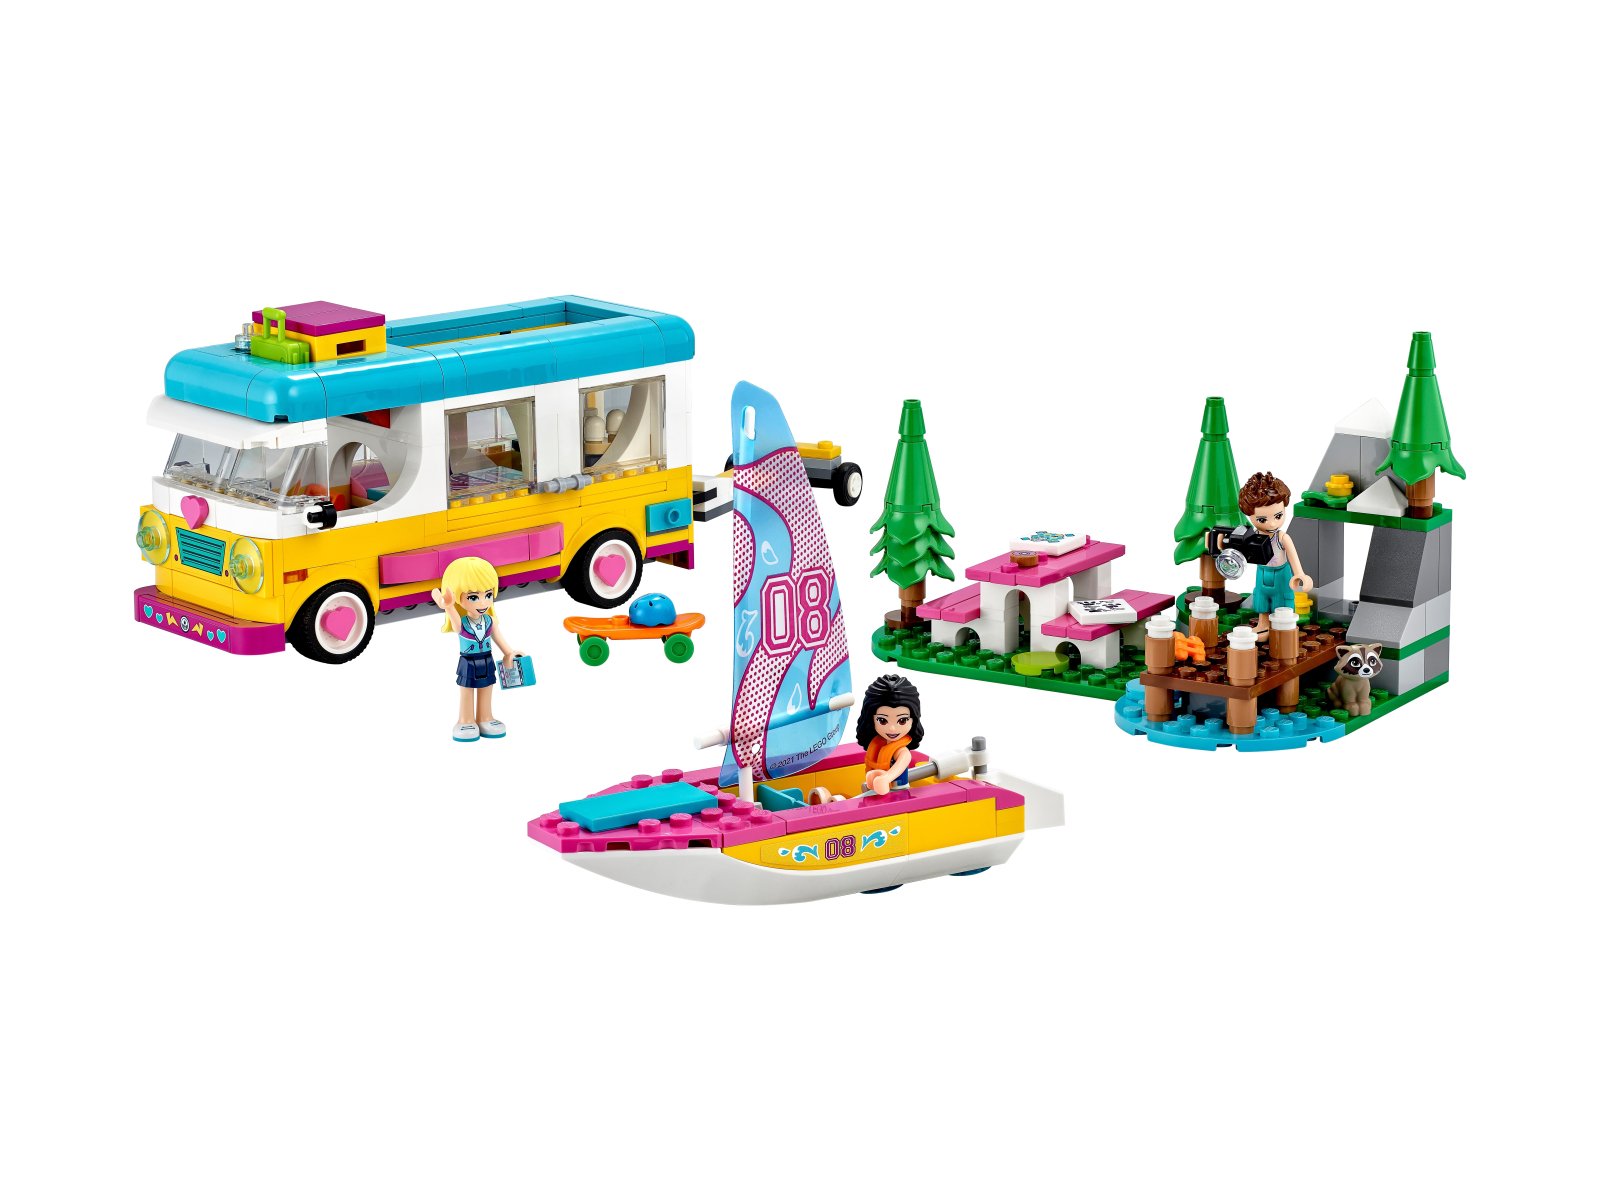 LEGO Friends 41681 Leśny mikrobus kempingowy i żaglówka